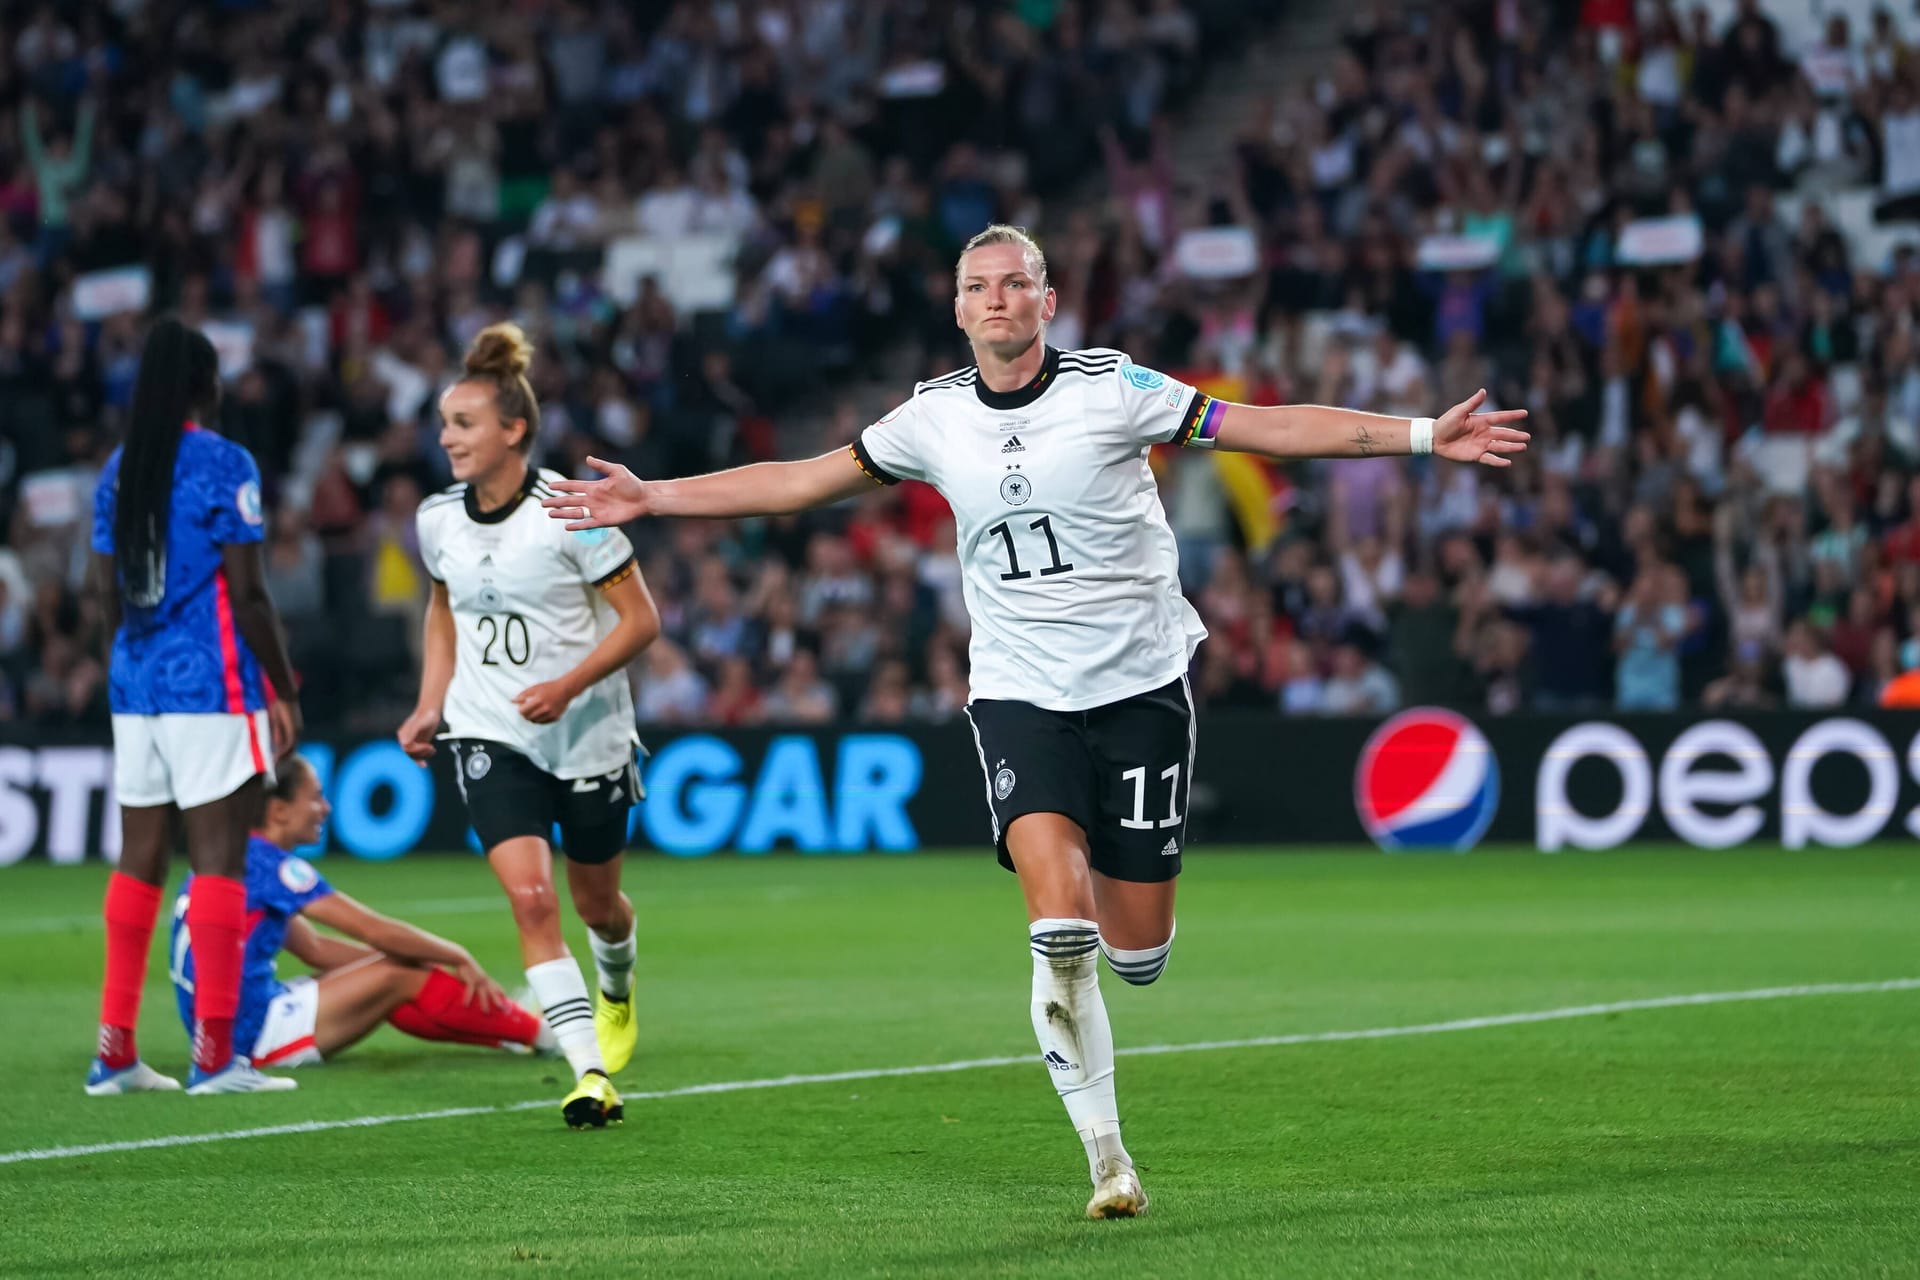 Halbfinale Deutschland gegen Frankreich (2:1): Deutschland fängt sich das erste Gegentor, aber Alexandra Popp zeigte einmal mehr, warum sie ein Vorbild für das Team und die geborene Anführerin ist. Ihre zwei Buden brachten Deutschland den Einzug ins Finale.